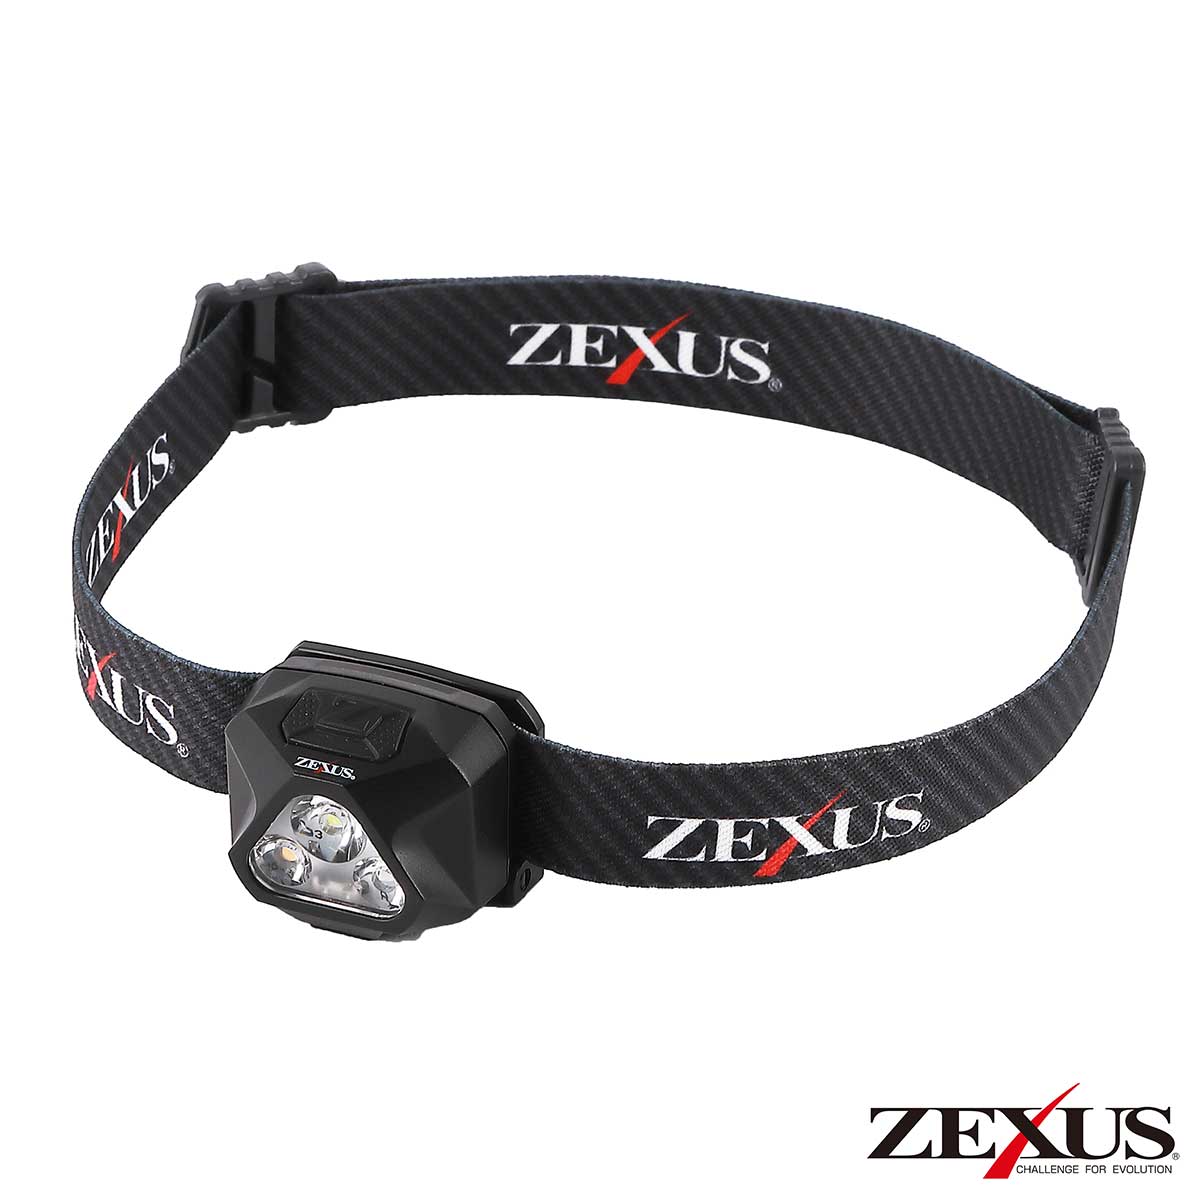 zexus102